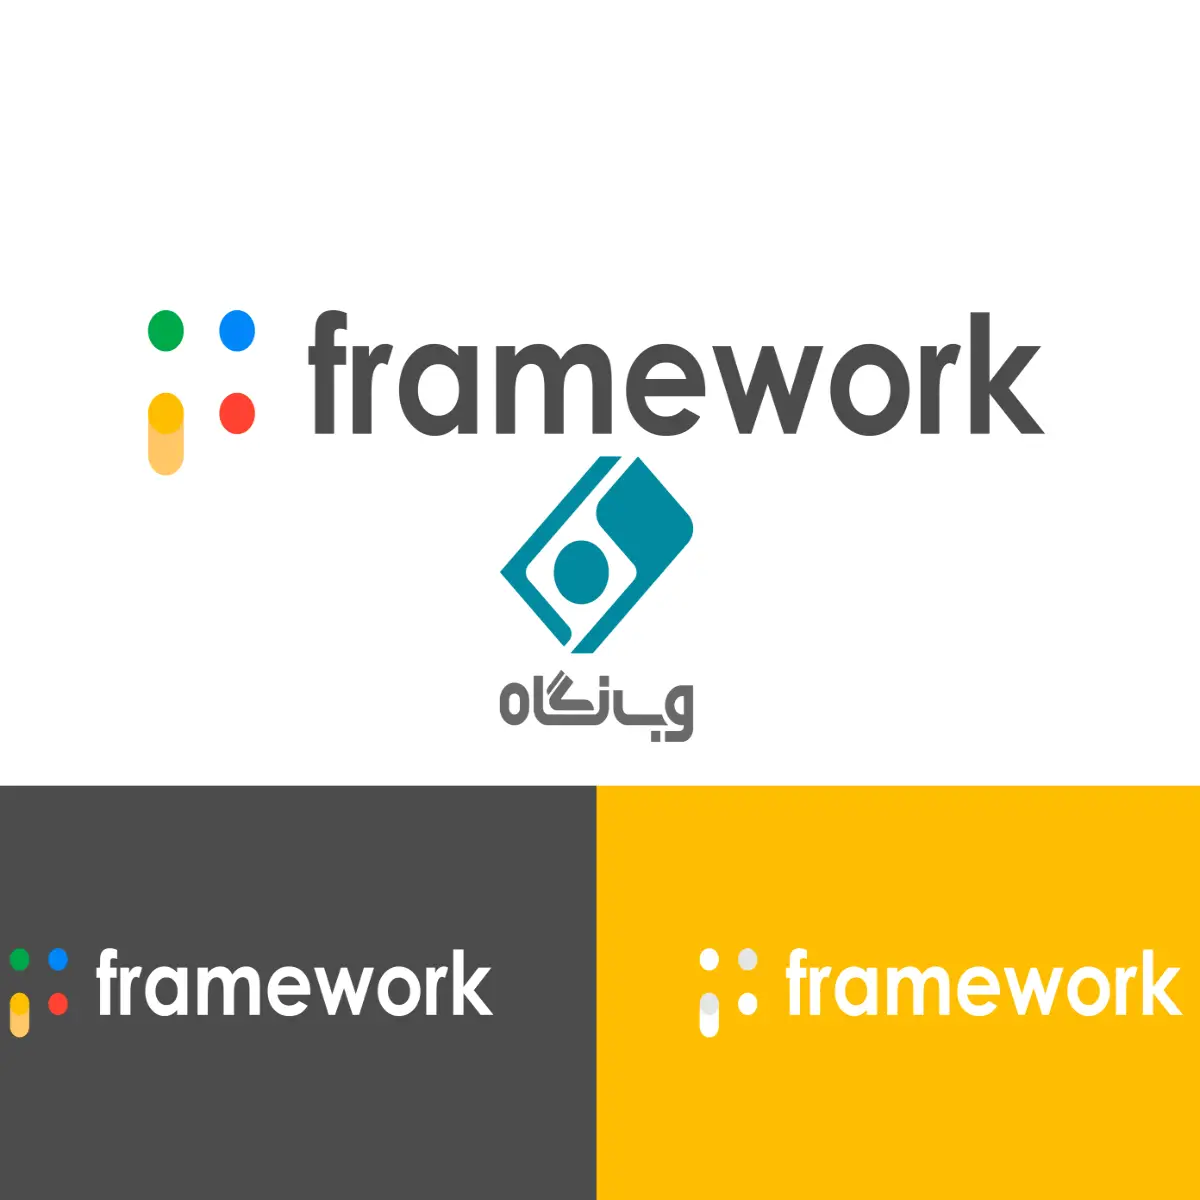 فریمورک framework چیست